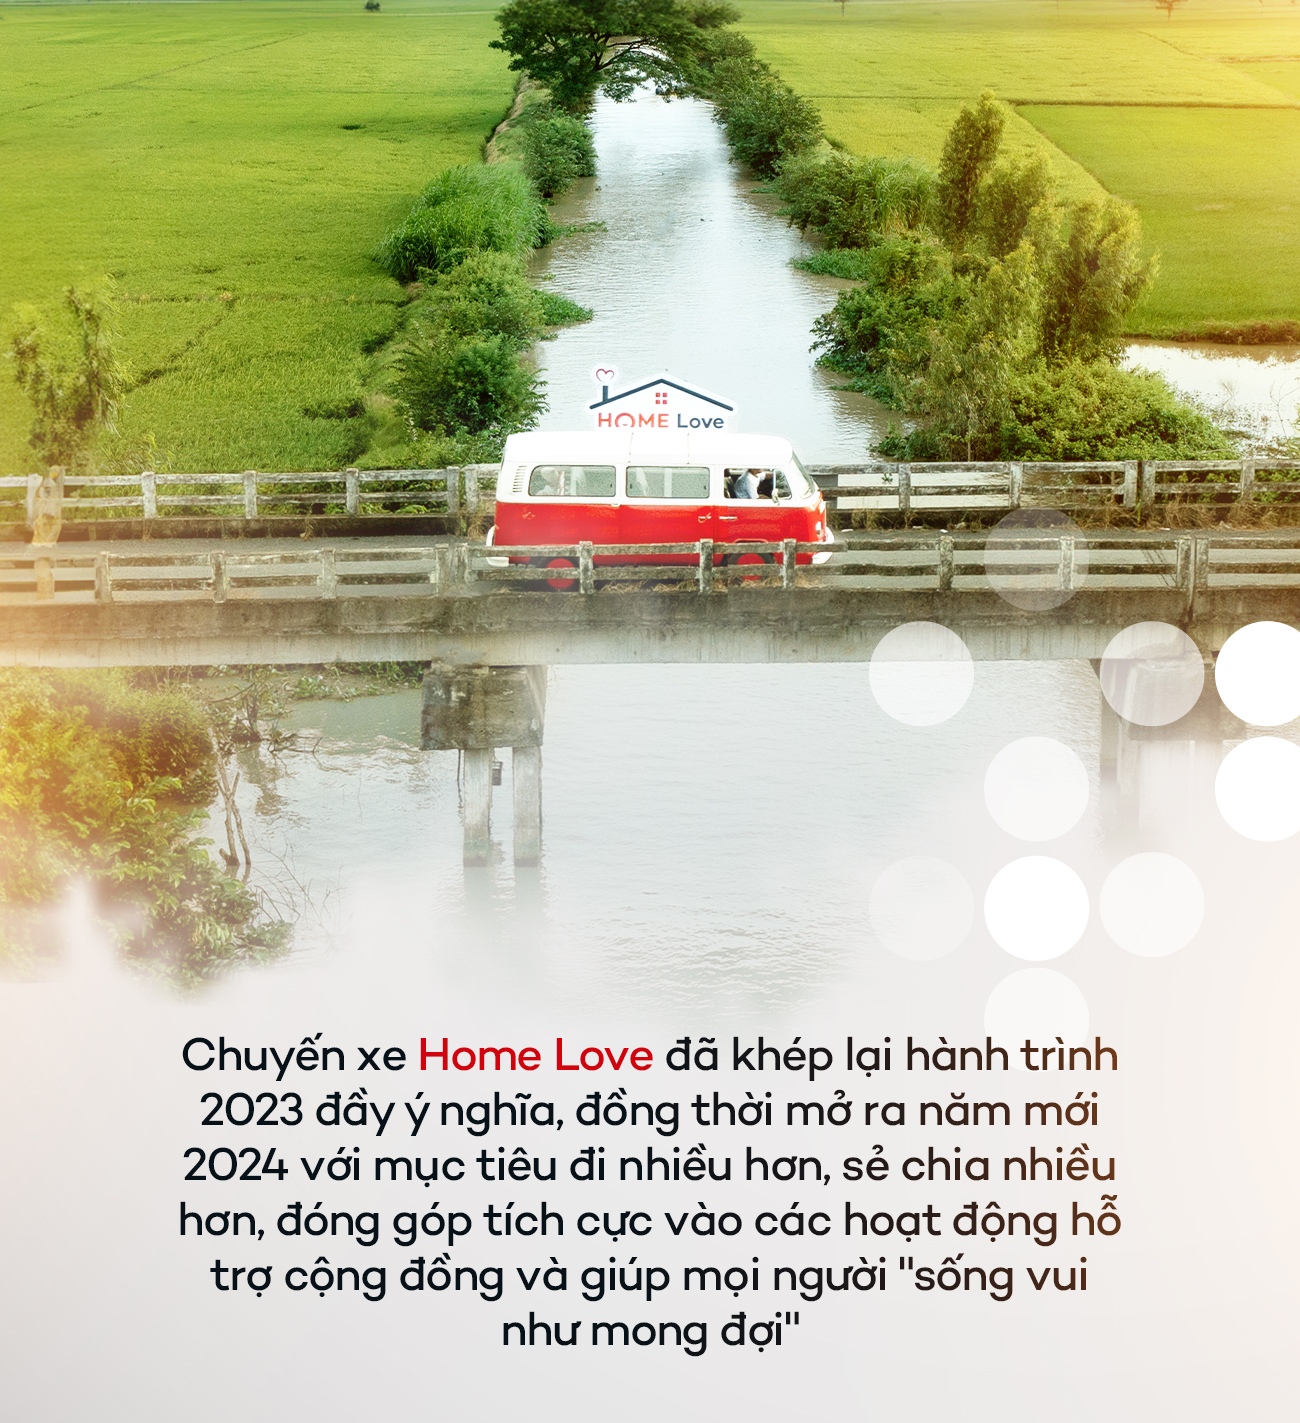 Nhìn lại hành trình “Mang Tết Ấm về Bạc Liêu” cùng Home Love - chuyến đi của yêu thương và chia sẻ - Ảnh 8.